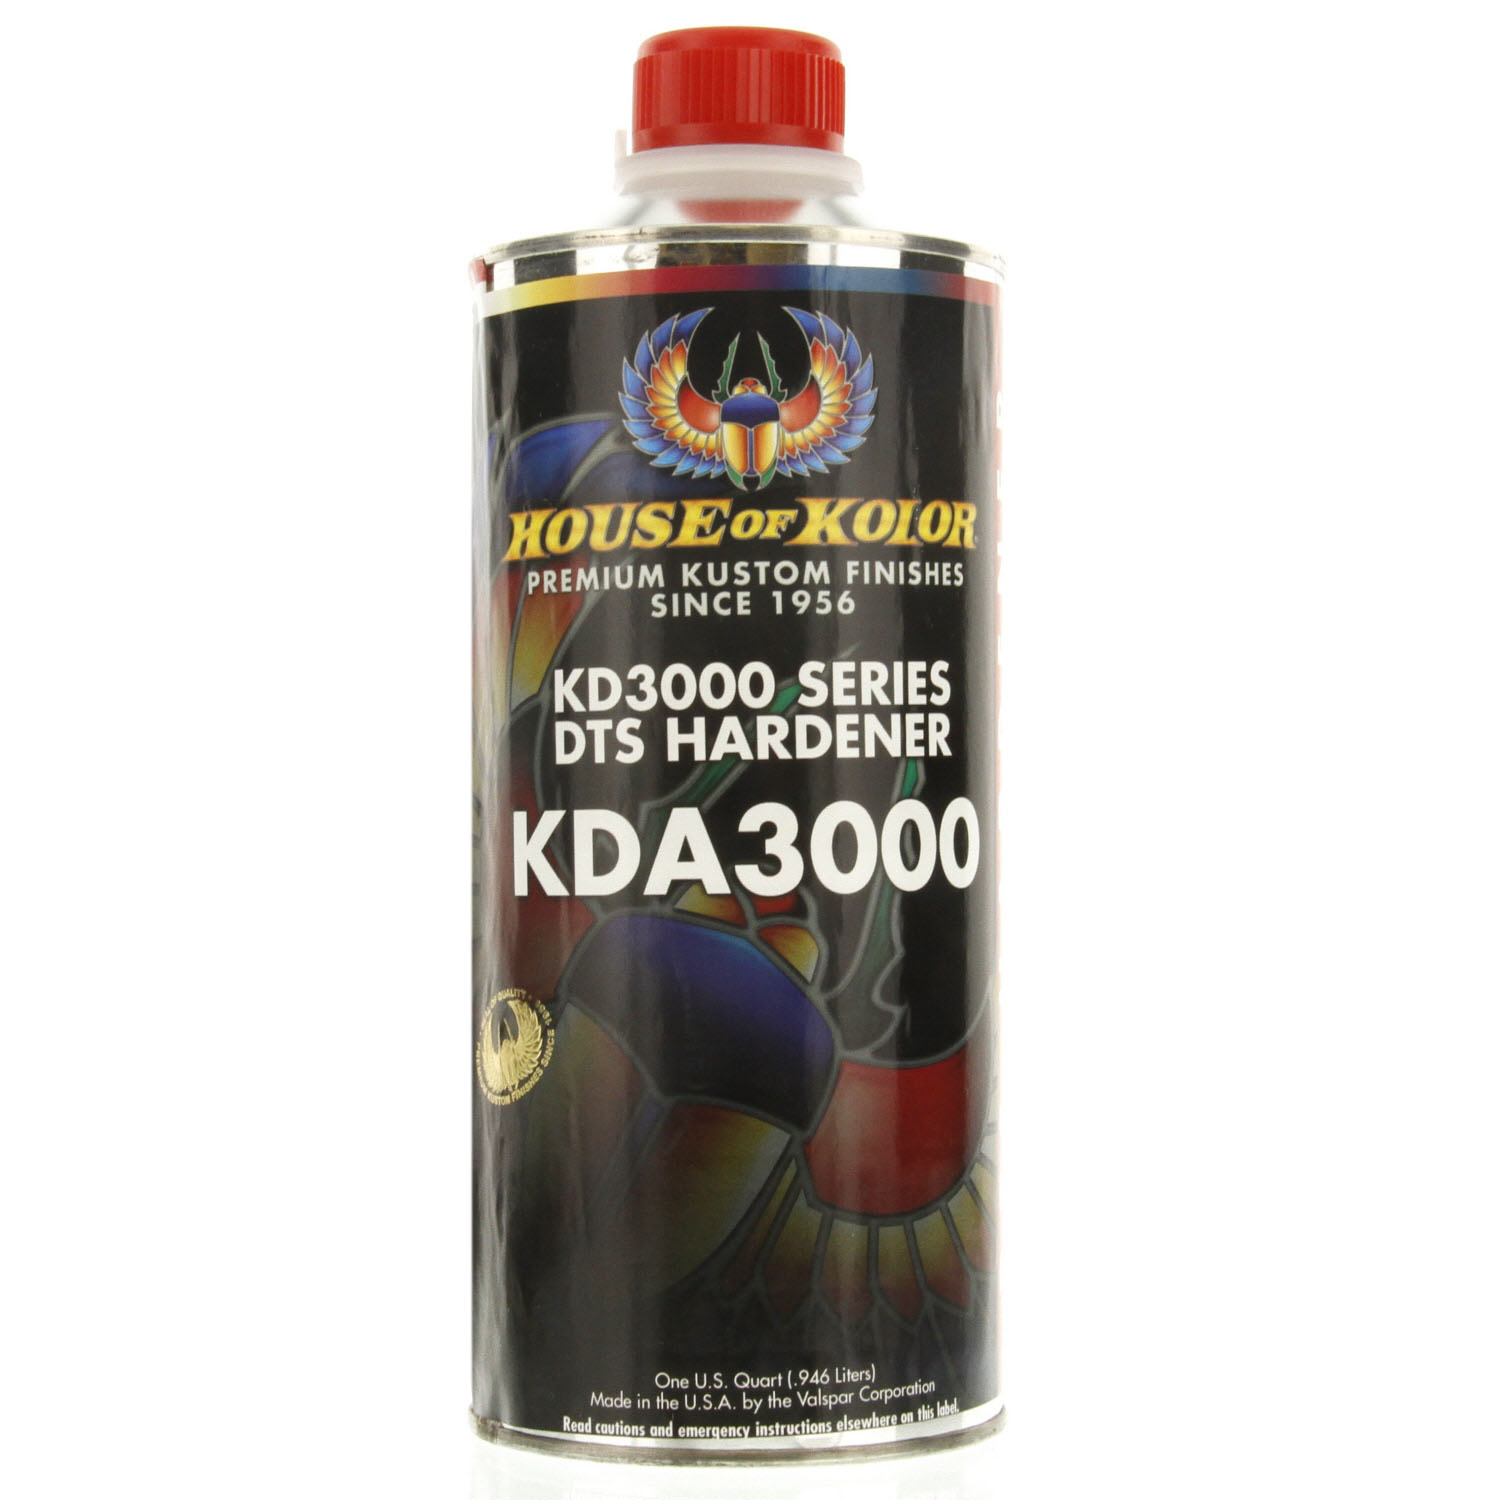 KDA3000 DTS Hardener 1US Quart